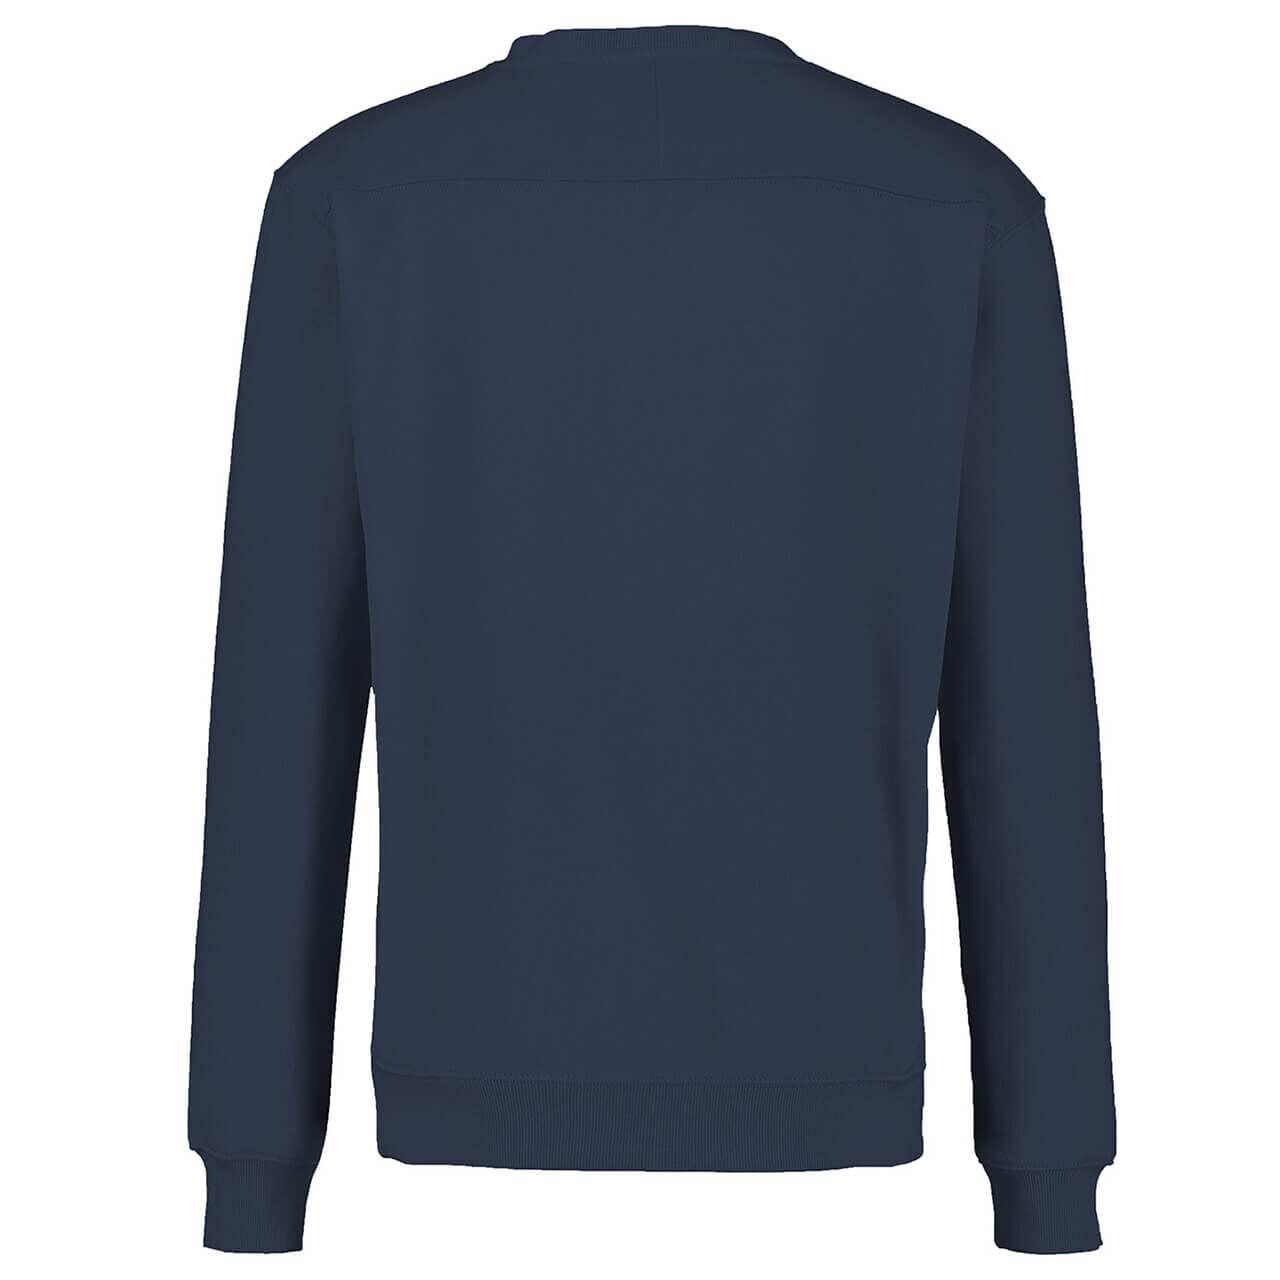 Lerros Sweatshirt für Herren in Dunkelblau, FarbNr.: 478